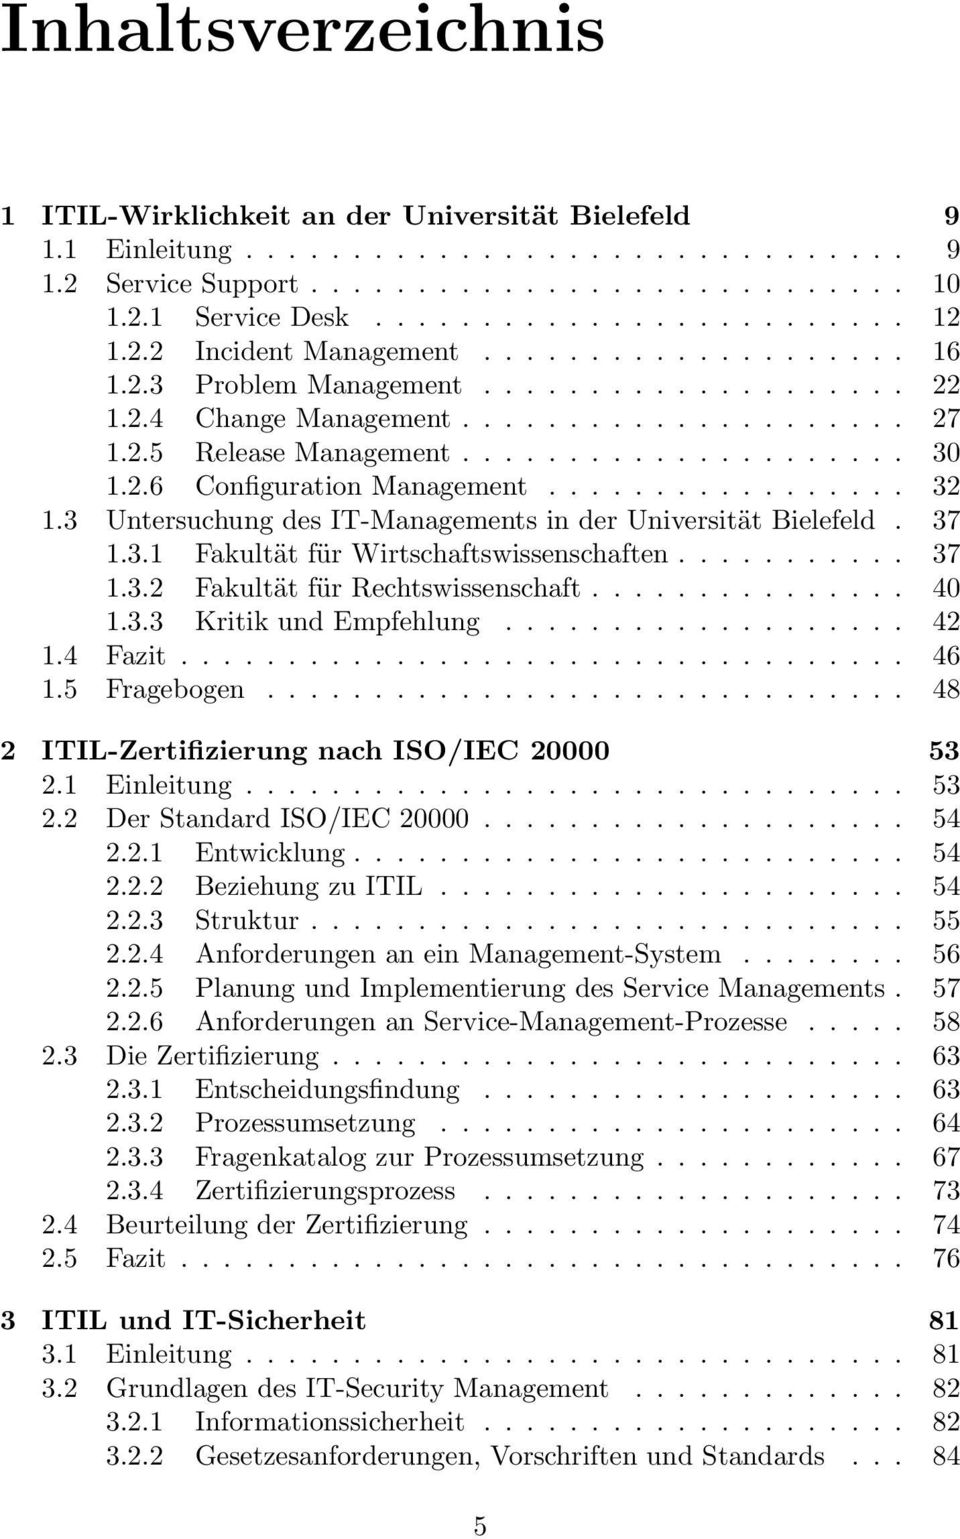 ................ 32 1.3 Untersuchung des IT-Managements in der Universität Bielefeld. 37 1.3.1 Fakultät für Wirtschaftswissenschaften........... 37 1.3.2 Fakultät für Rechtswissenschaft............... 40 1.